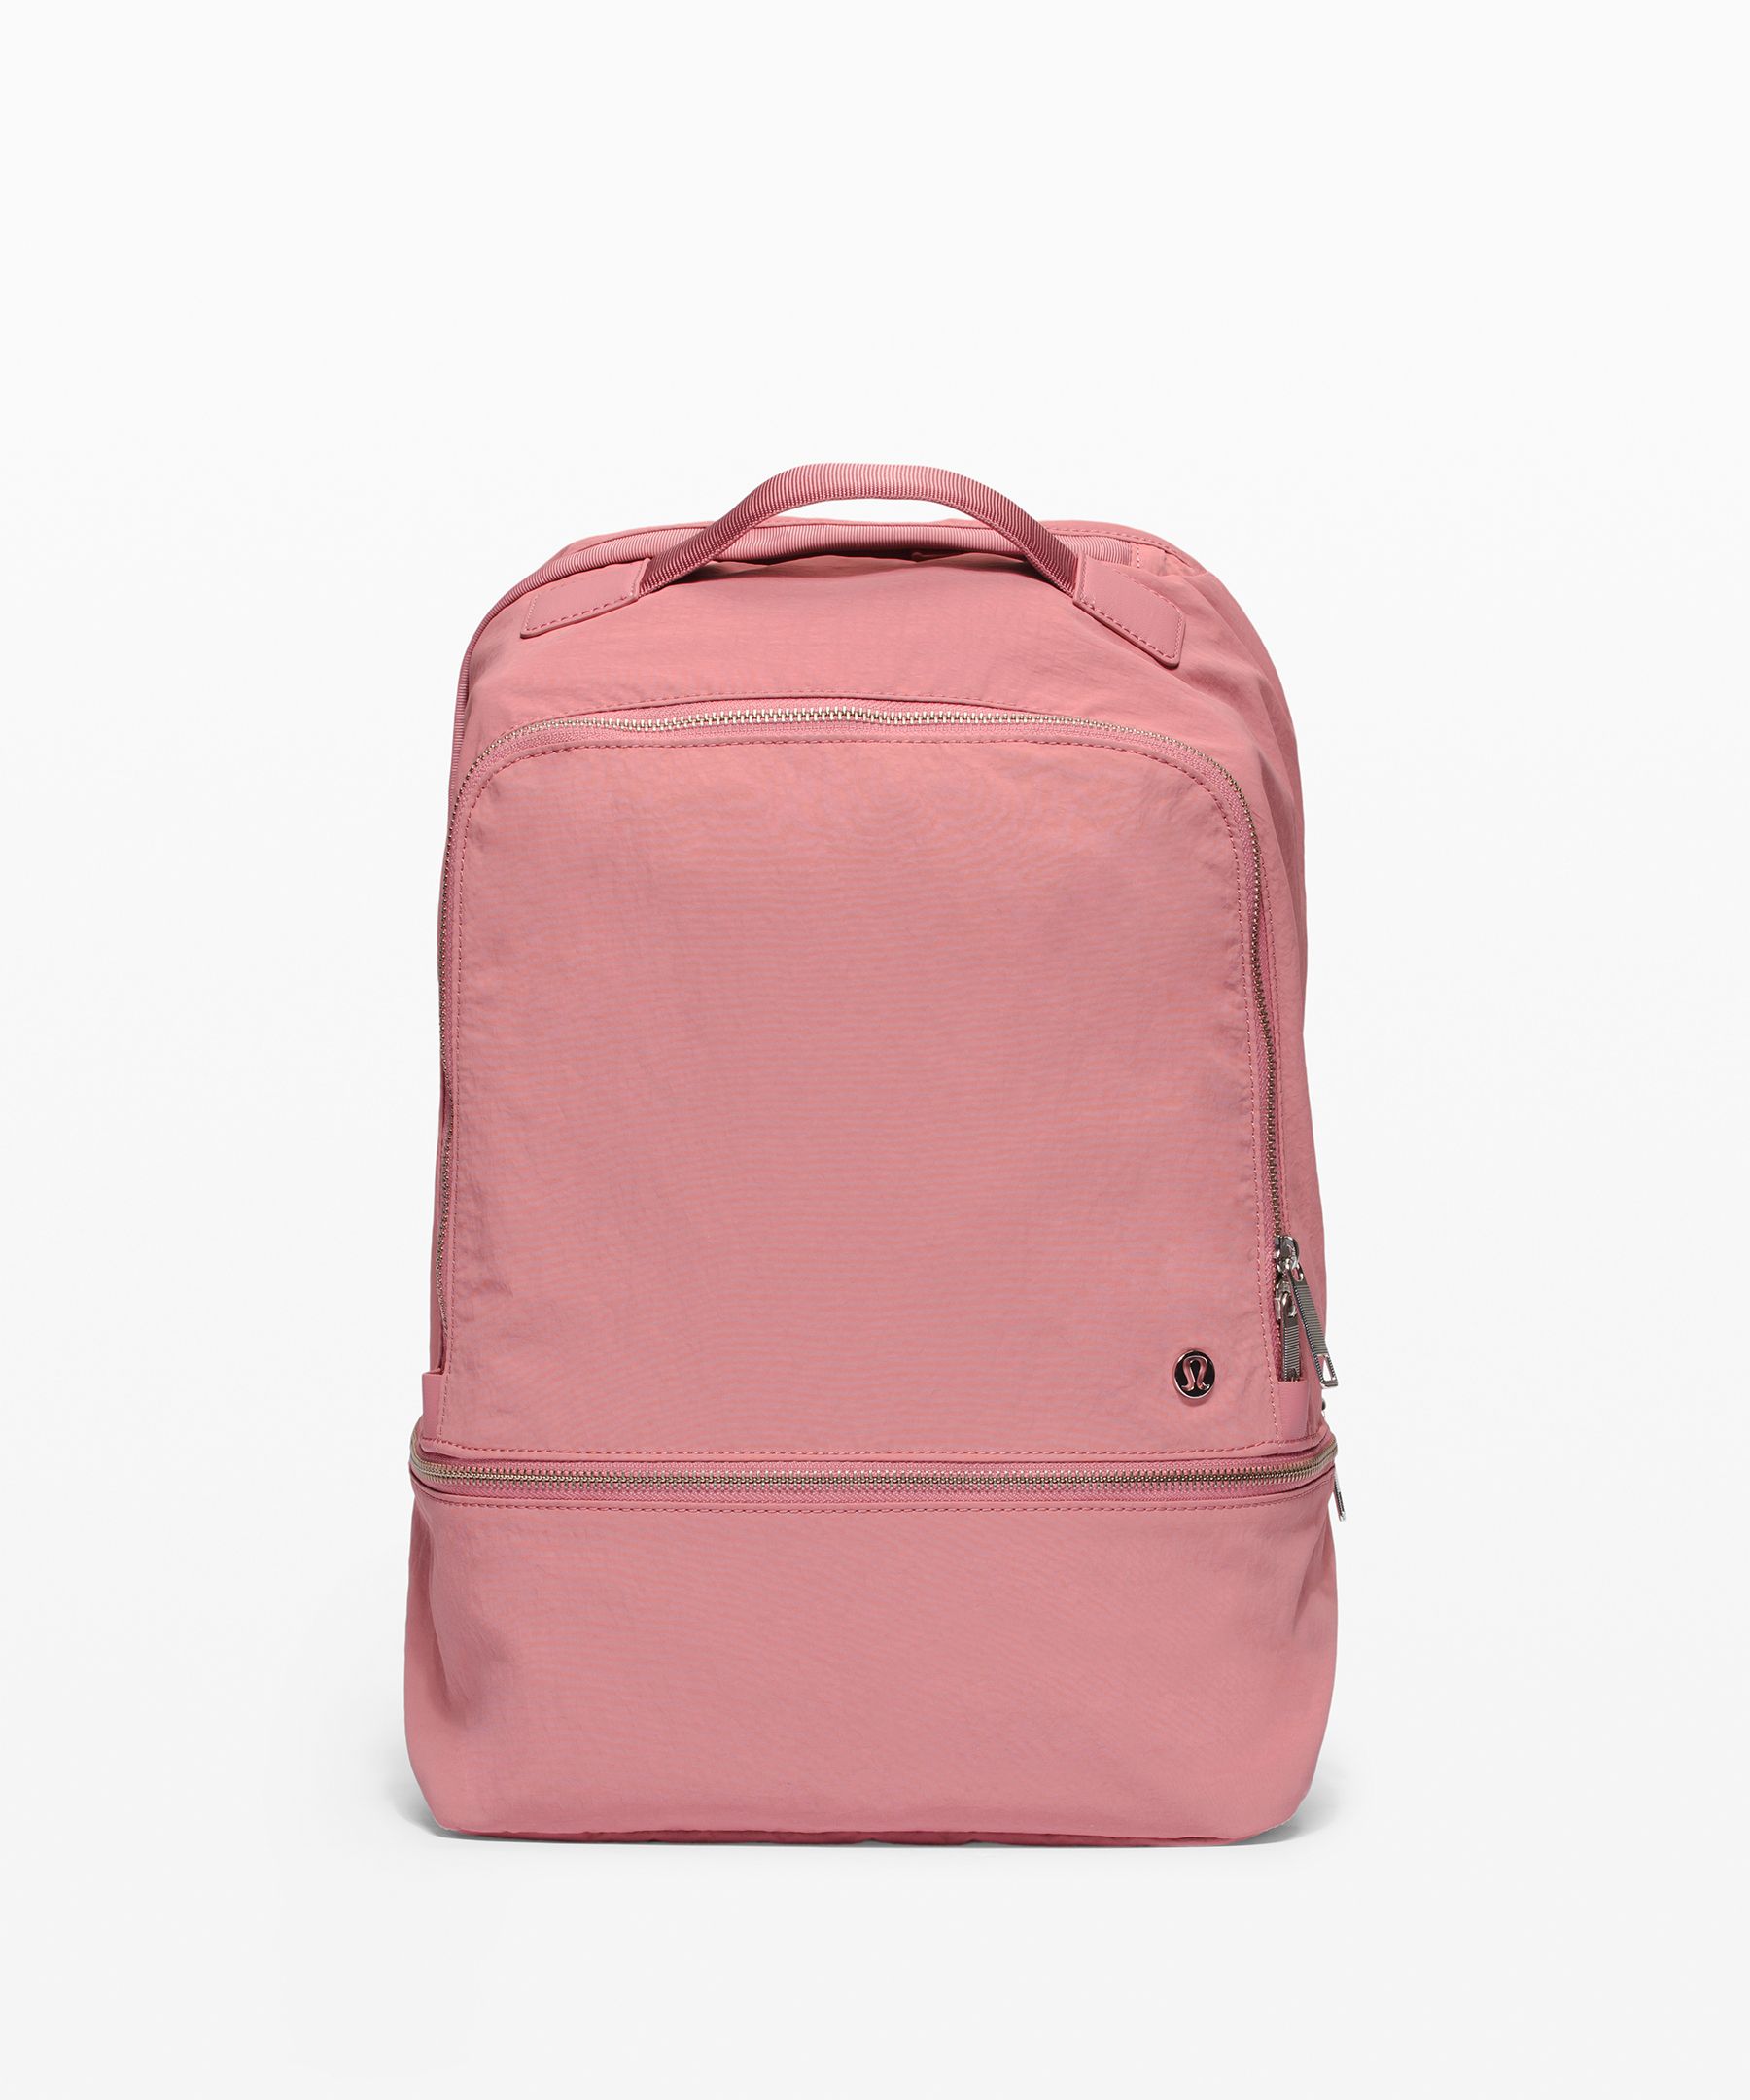 Lululemon City Adventurer Backpack 17l In Deco Pink